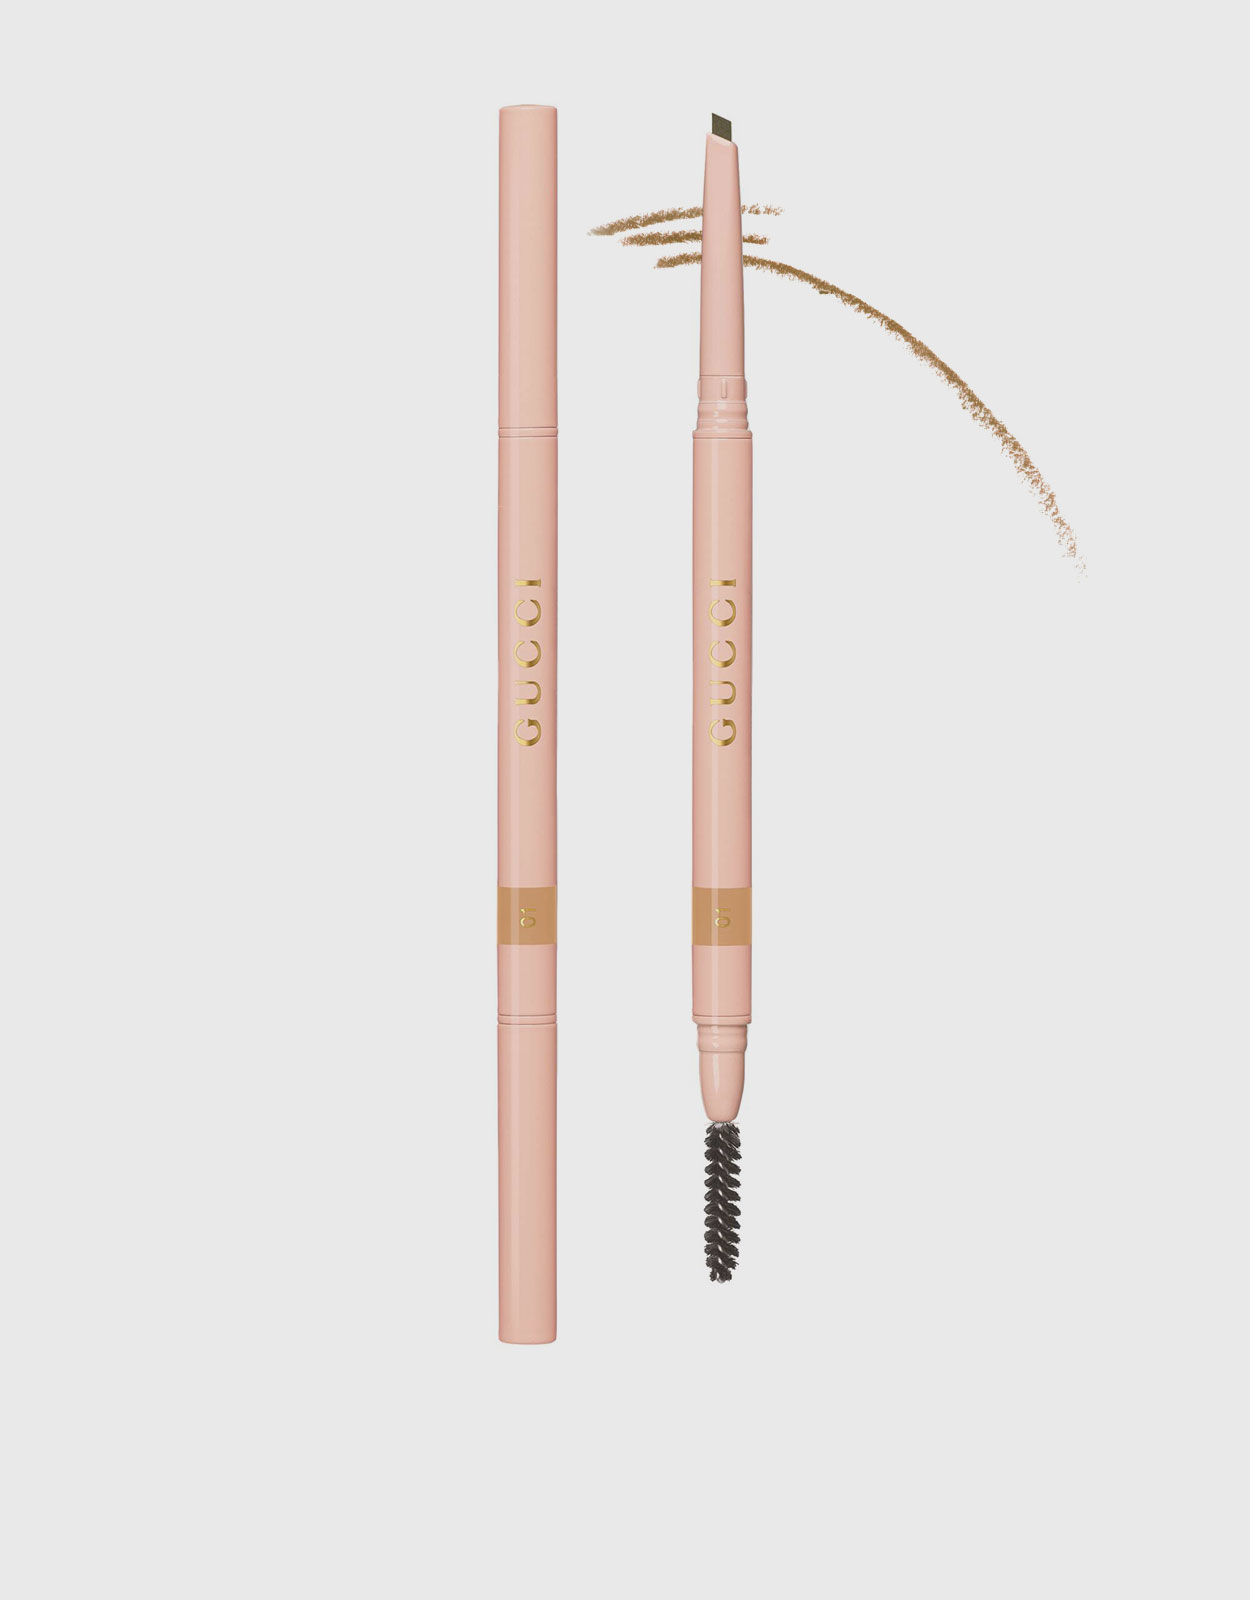 STYLO SOURCILS WATERPROOF Defining longwear eyebrow pencil 804 - Blond doré